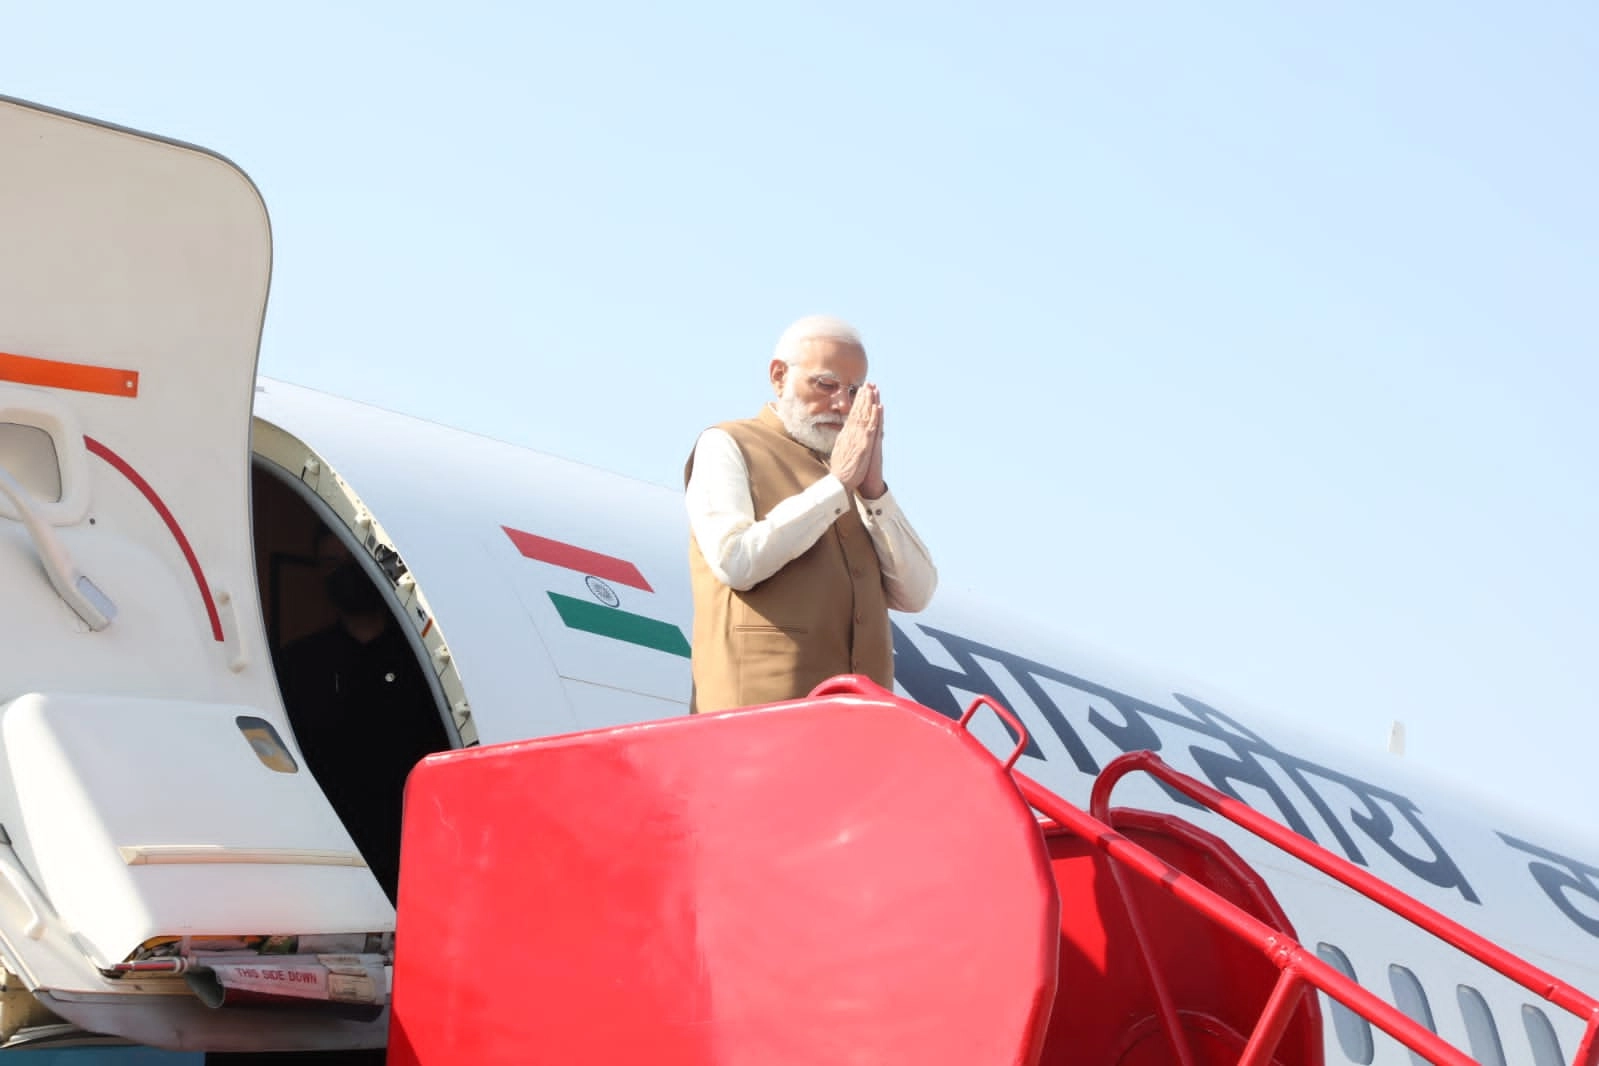 आज भोपाल दौरे पर पीएम मोदी, कमांडर कांफ्रेंस में होंगे शामिल, वंदे भारत ट्रेन को दिखाएंगे हरी झंडी - PM Modi on Bhopal tour today